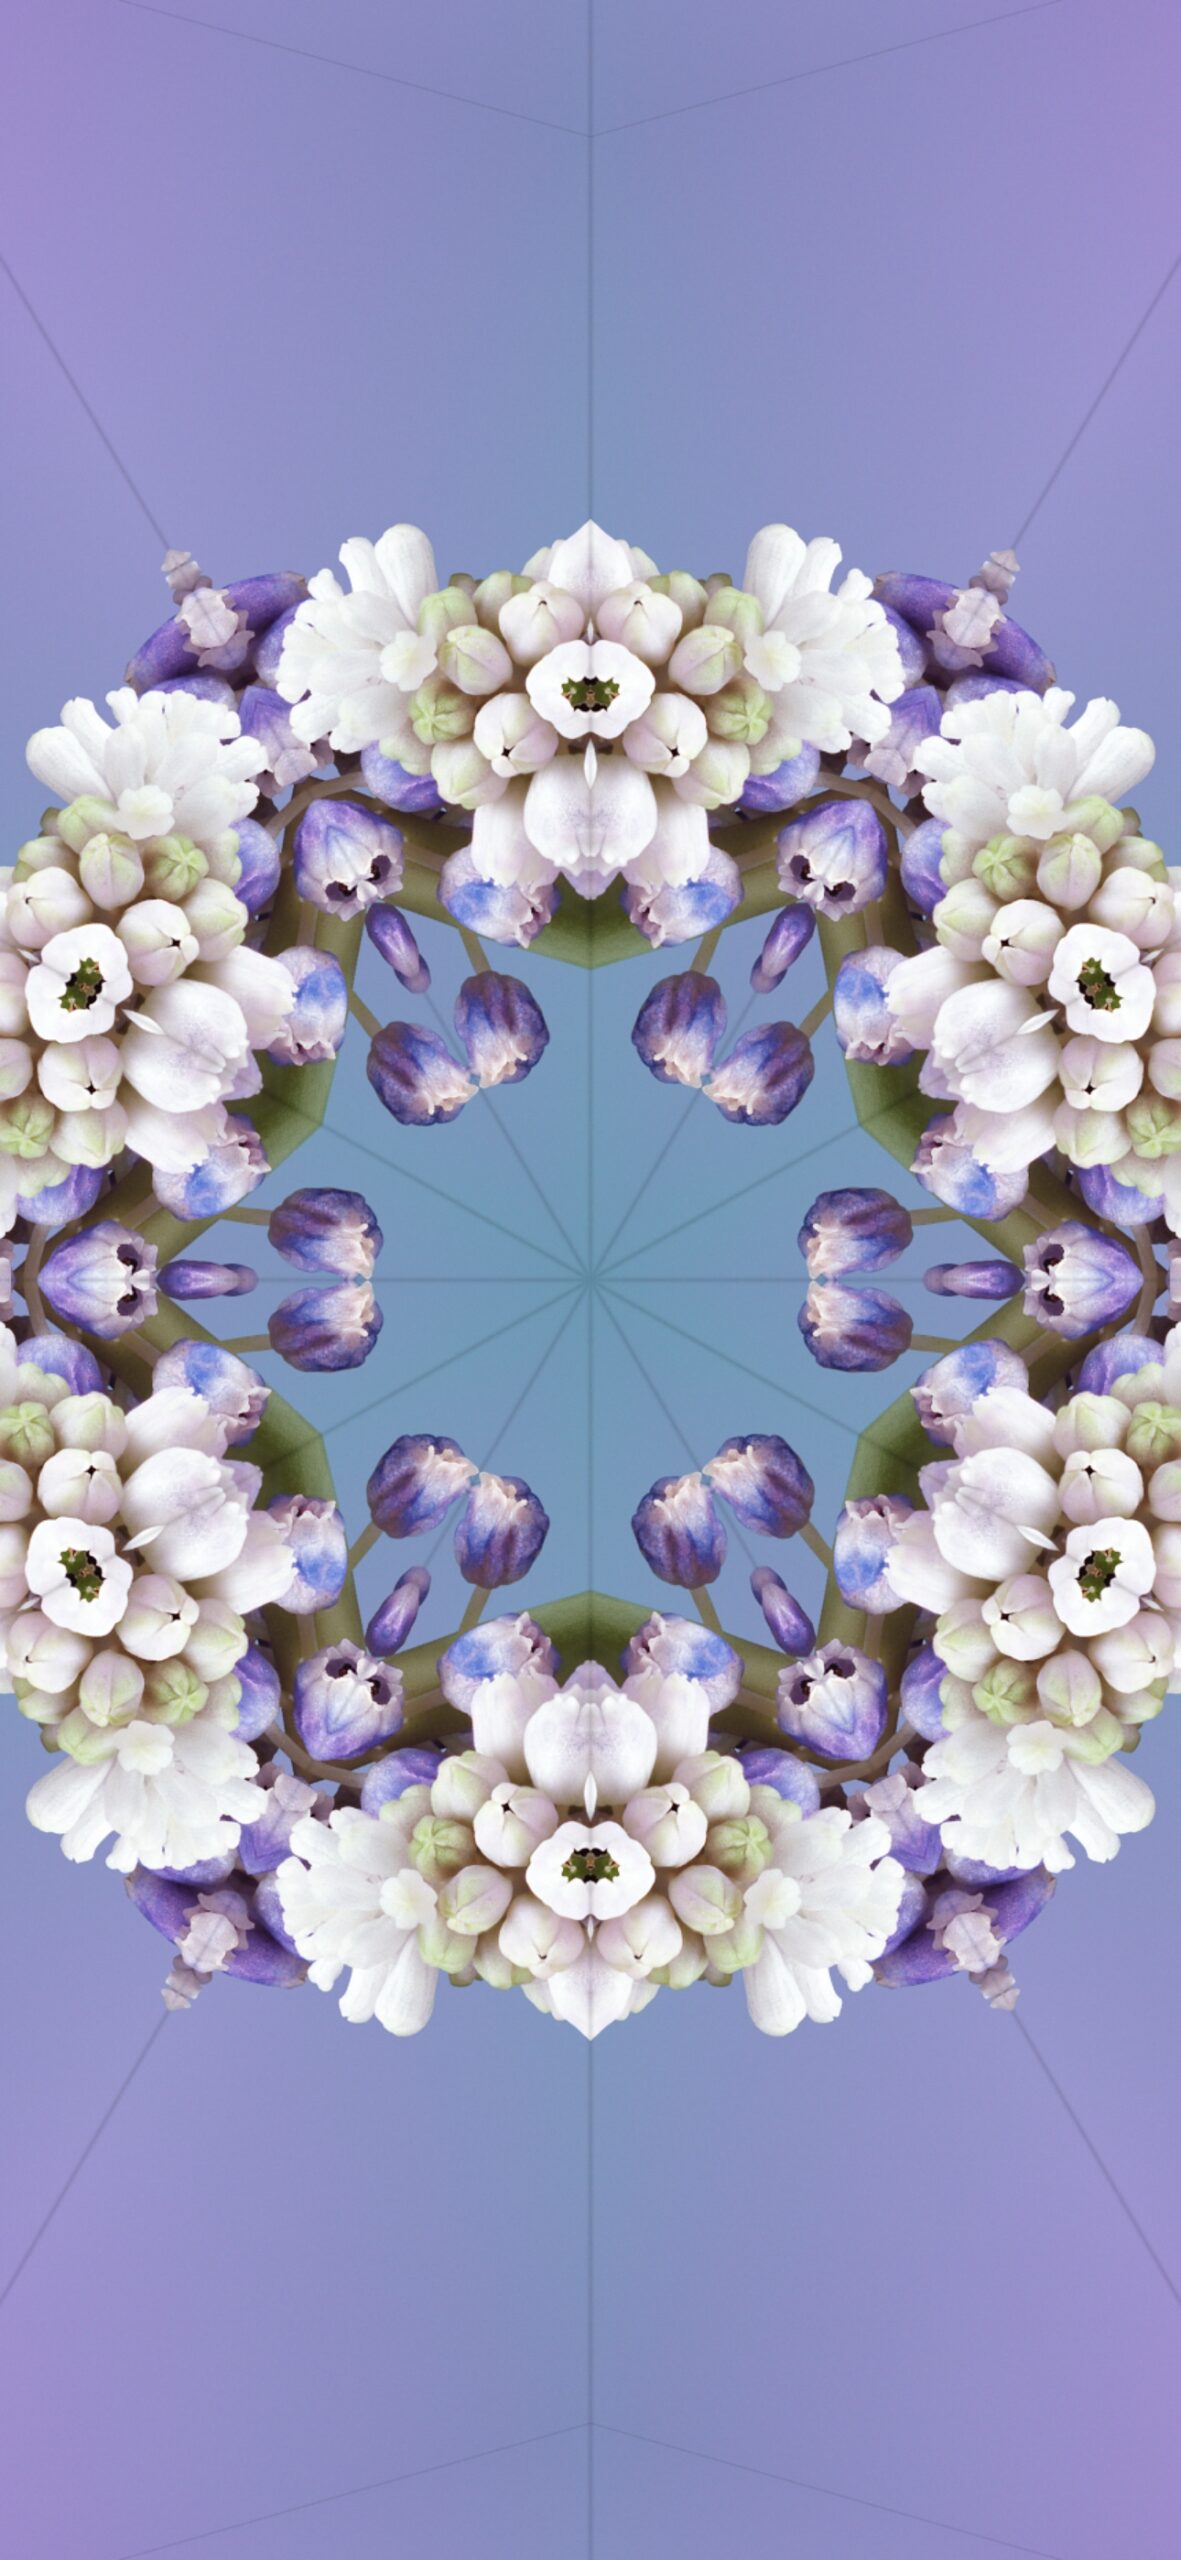 iOS17 桌布款式十：淺紫色花朵萬花筒桌布